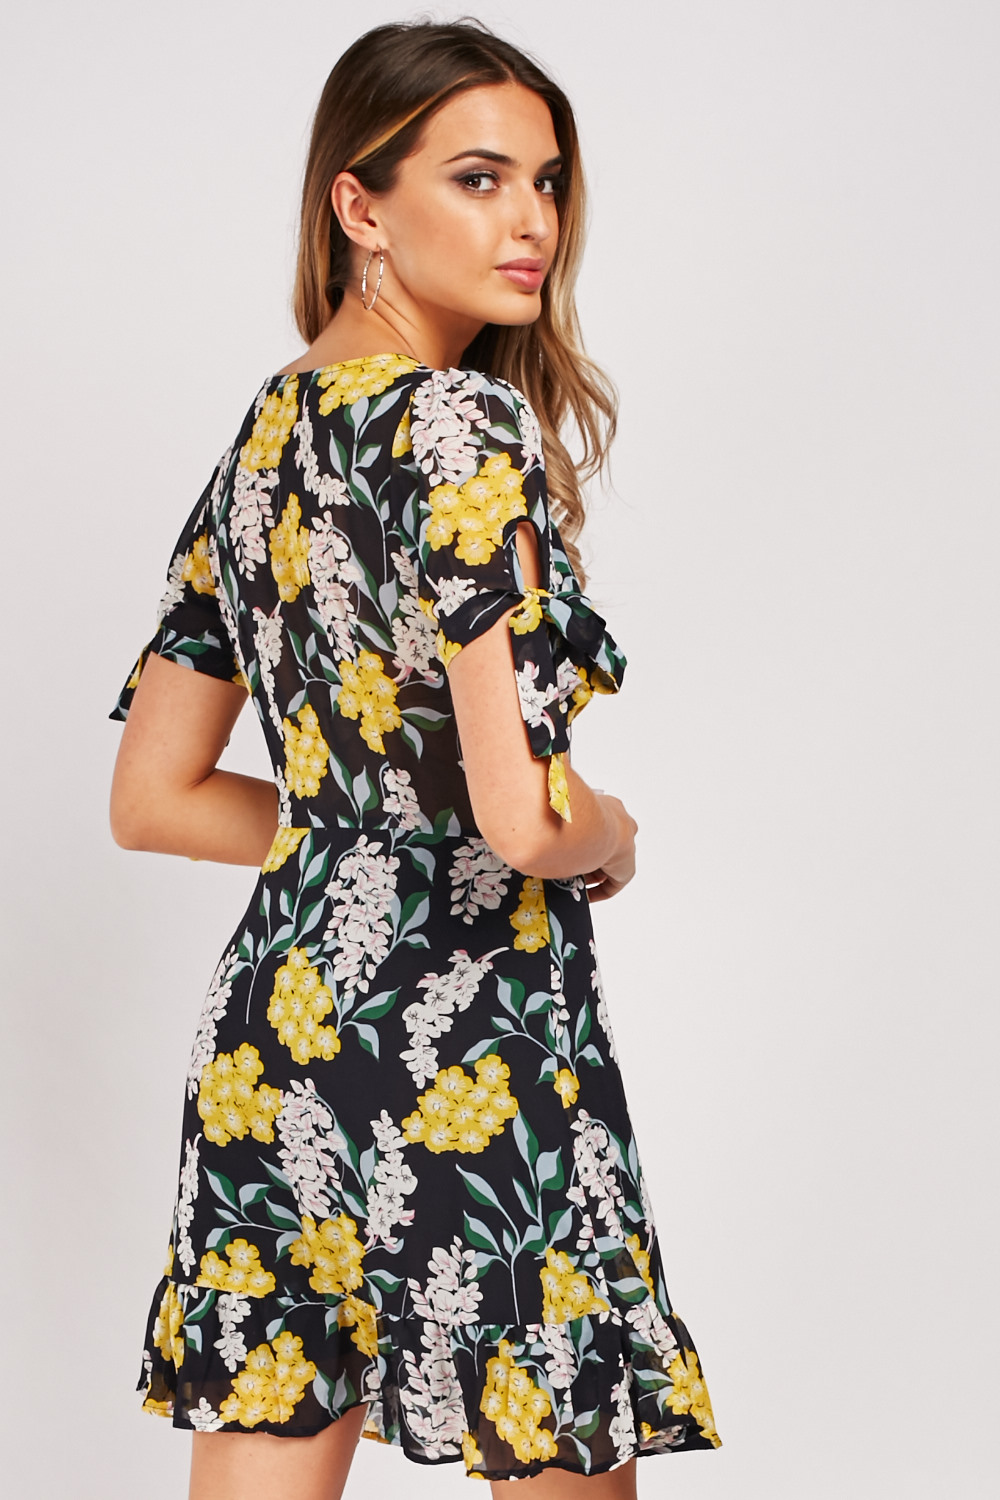 Floral Print Chiffon Tea Dress - Just $7